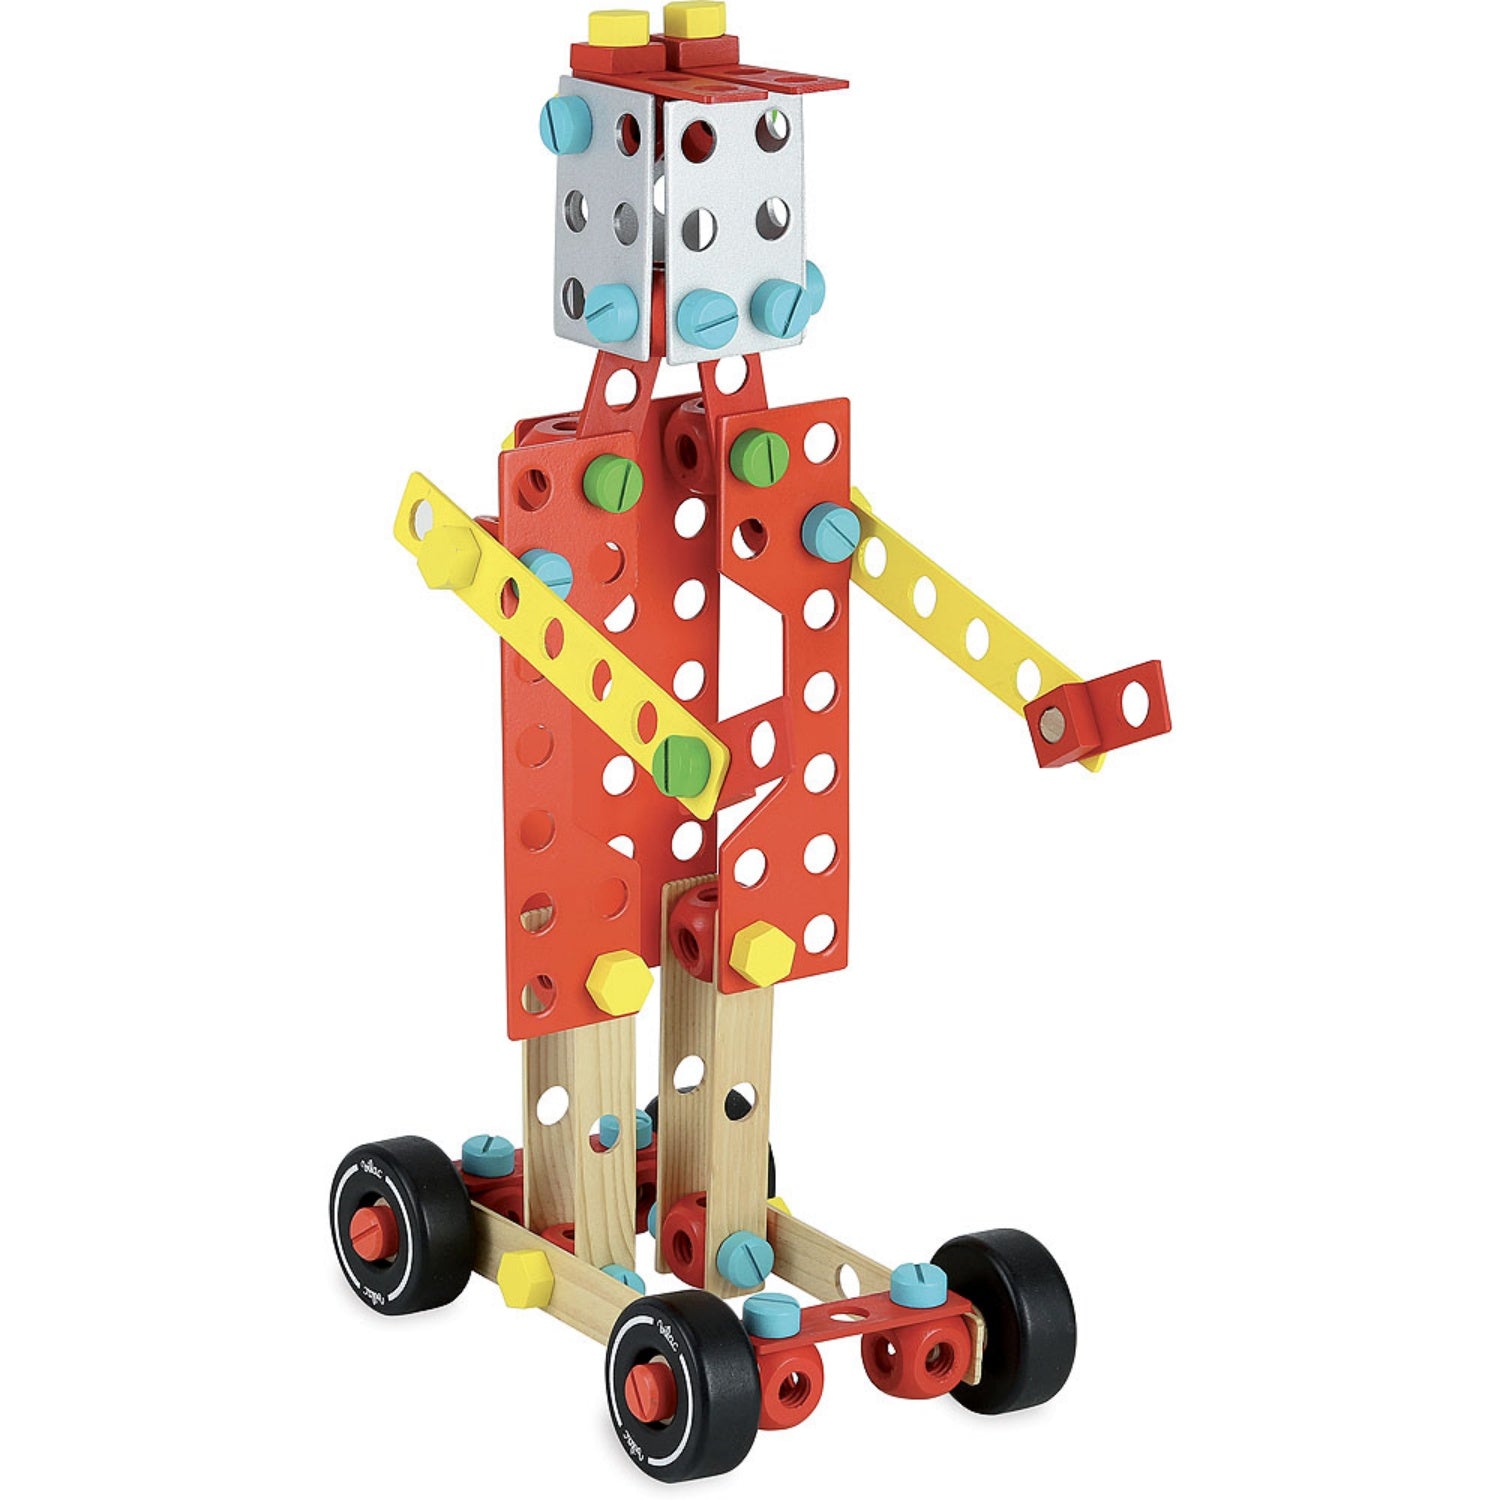 Vilac Wooden Construction Building Set ‘Super Batibloc’ | Educational Wooden Toy | Robot | BeoVERDE.ie